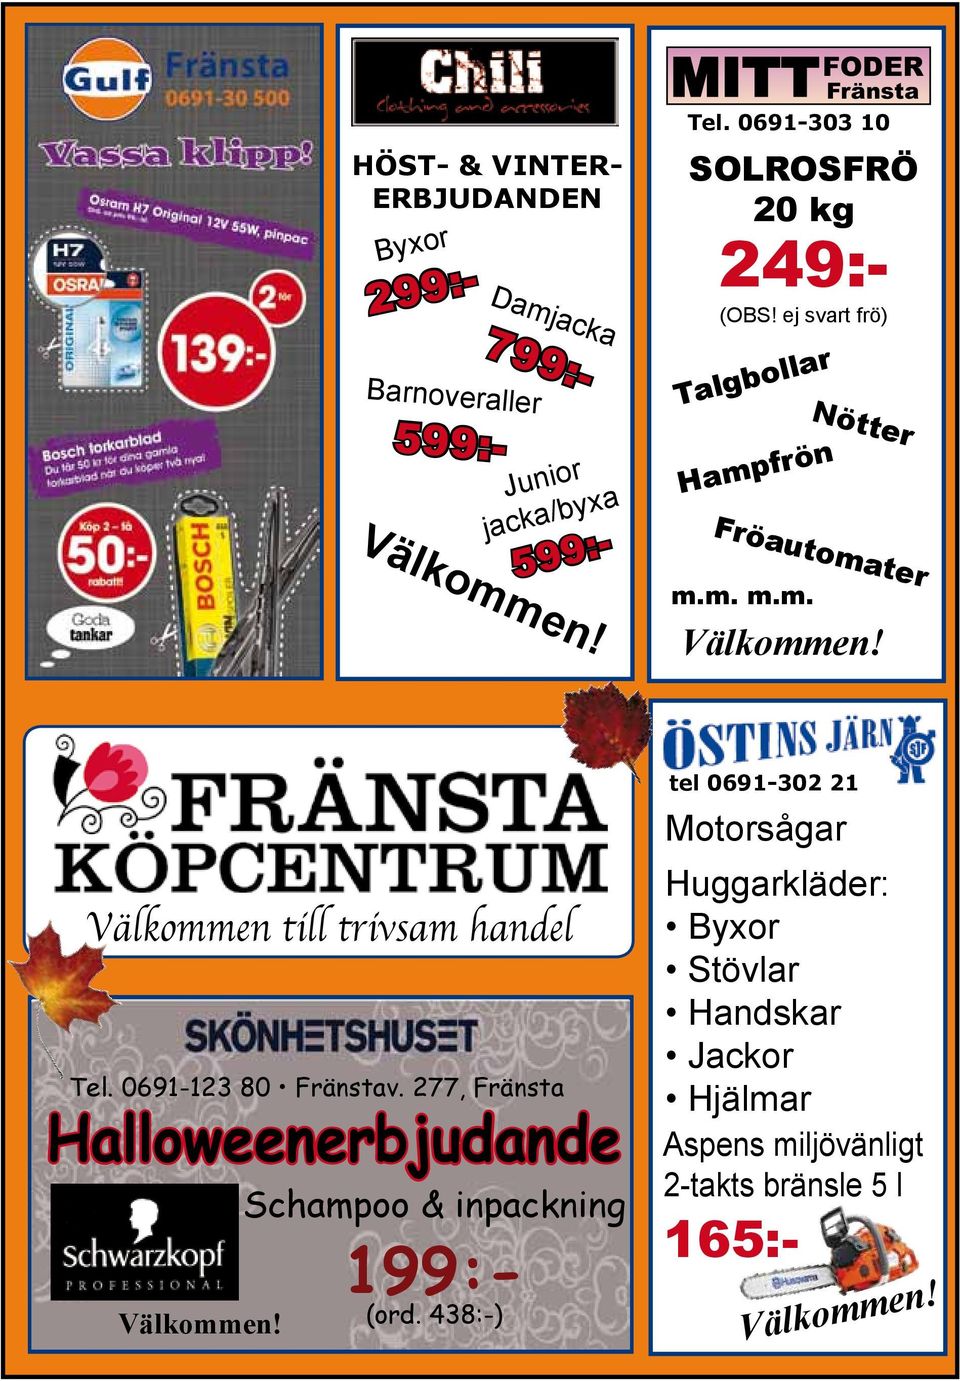 277, Fränsta Halloweenerbjudande Välkommen! Schampoo & inpackning Höst- & Vintererbjudanden 299:- 599:- 799:- 599:- 199:- (ord.